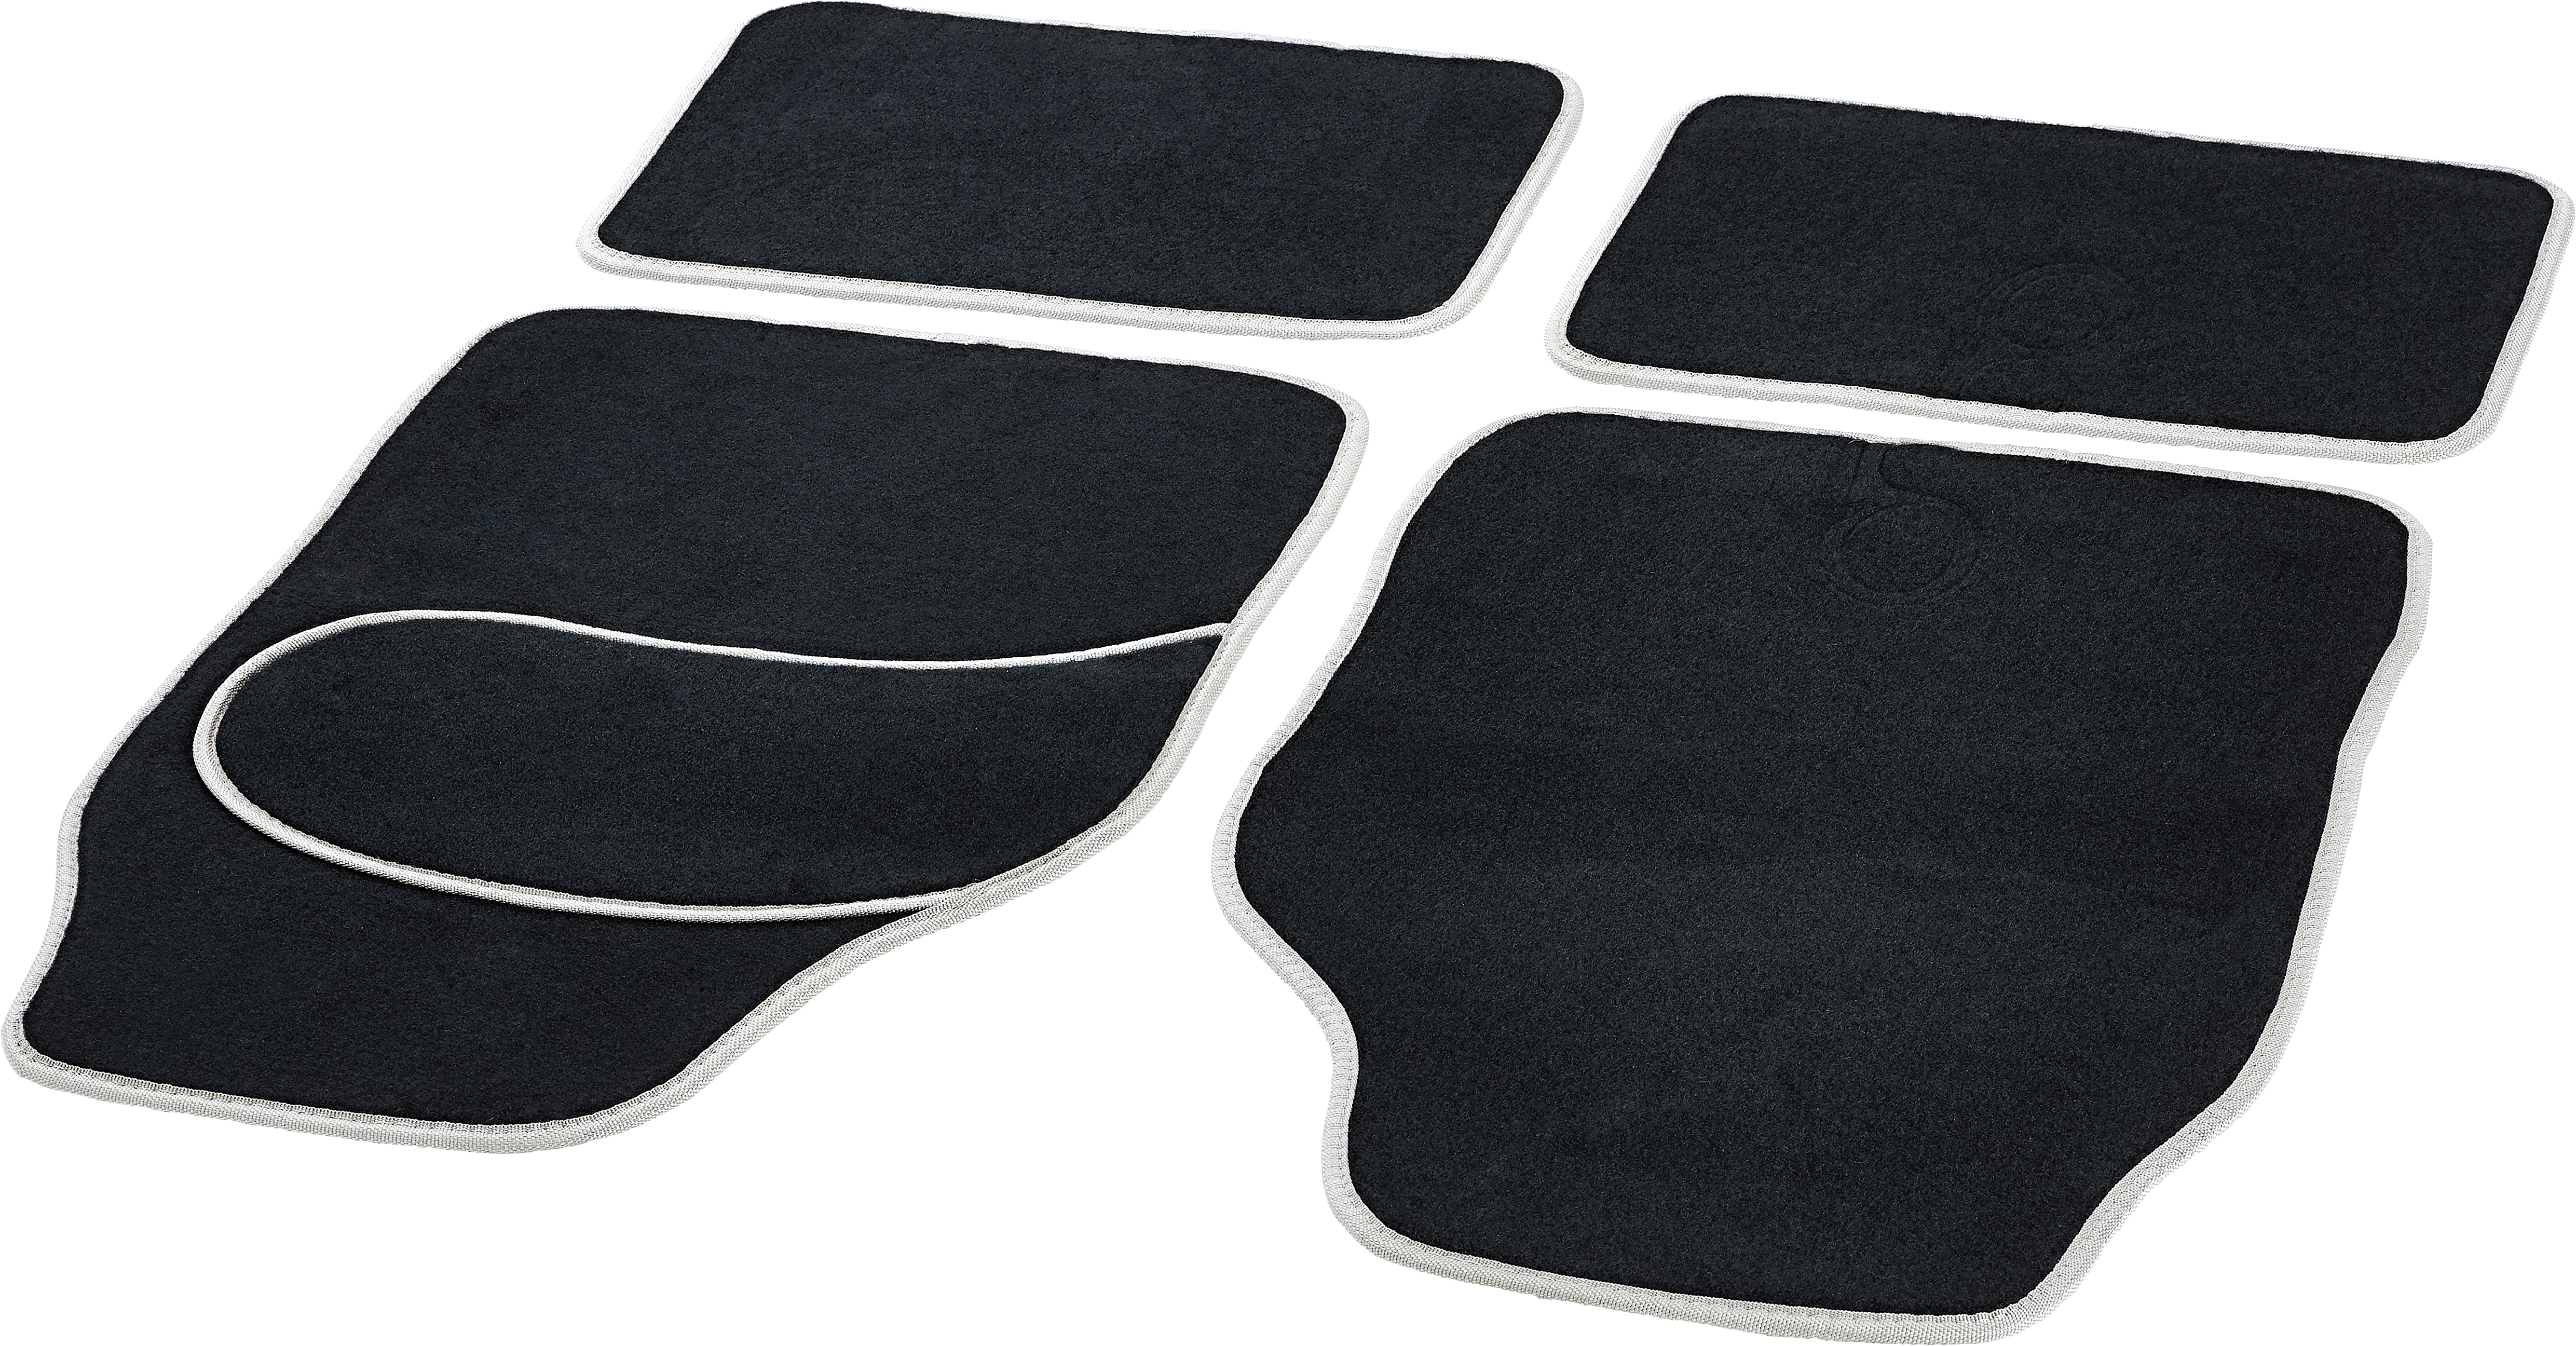 Michelin Universal Gummi-Fußmatten 4er-Set kaufen bei OBI